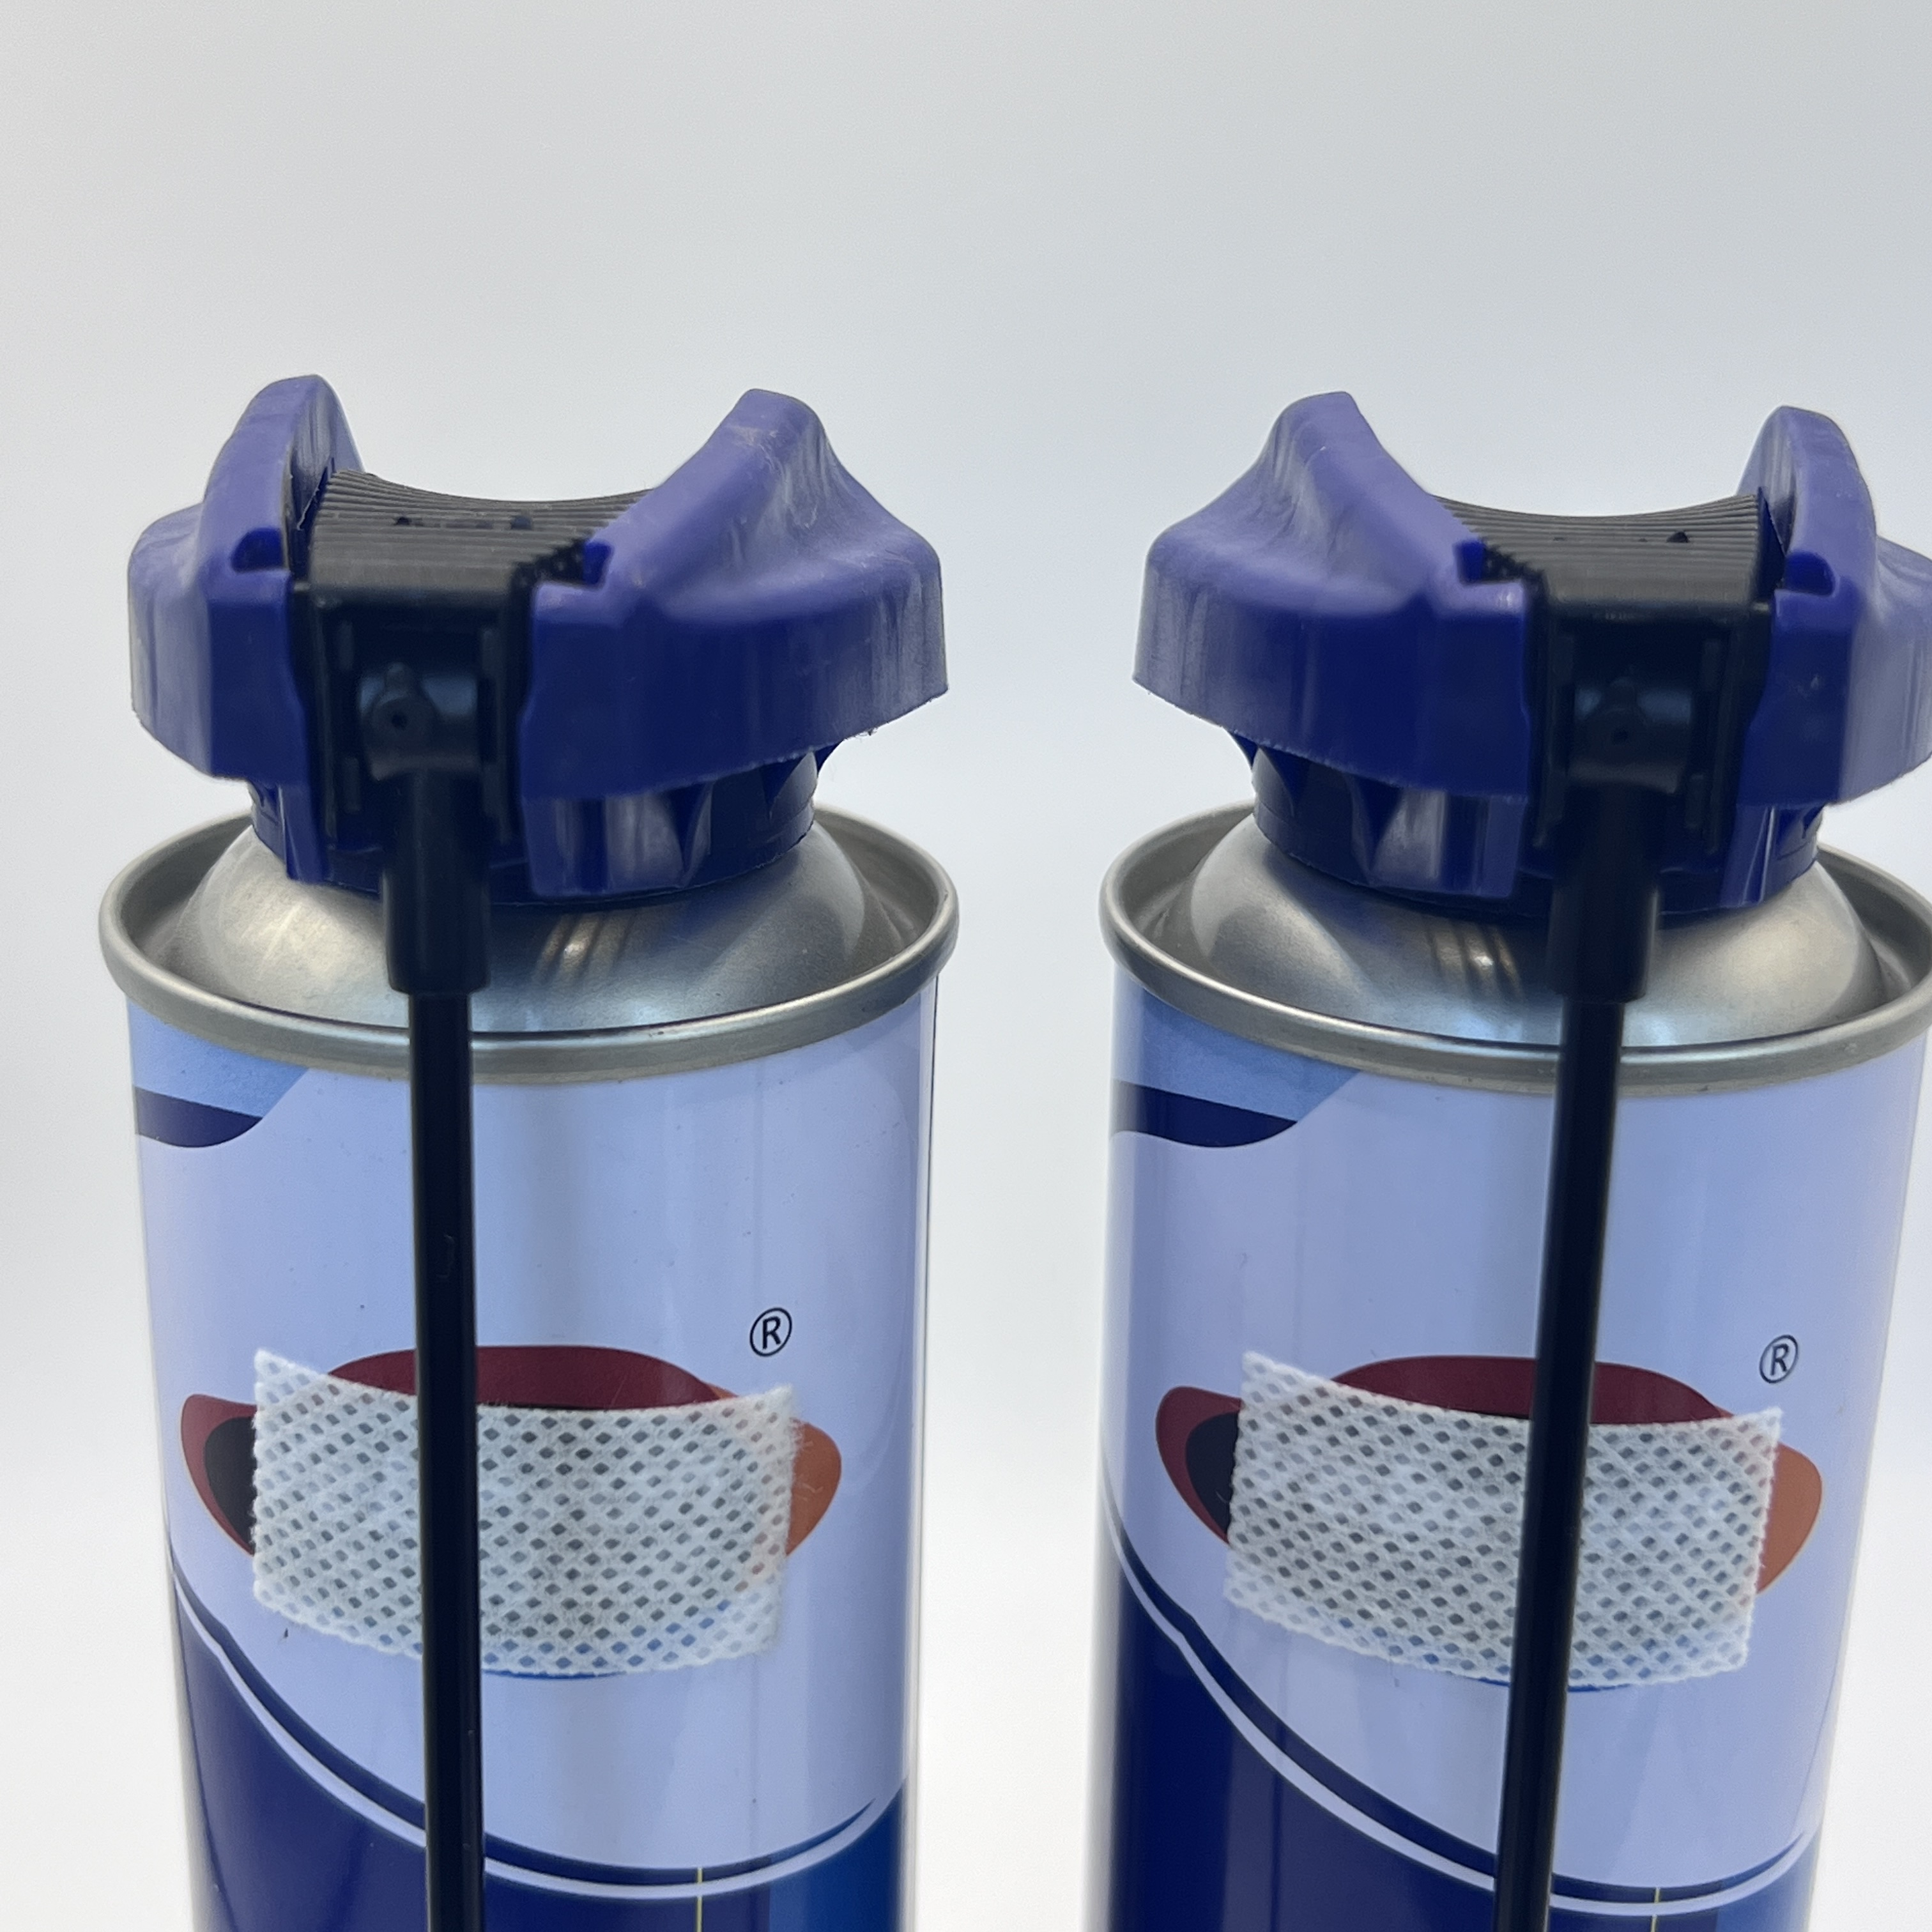 Boquilla de aerosol de aerosol de grado industrial para aplicaciones de servicio pesado: duradero y confiable